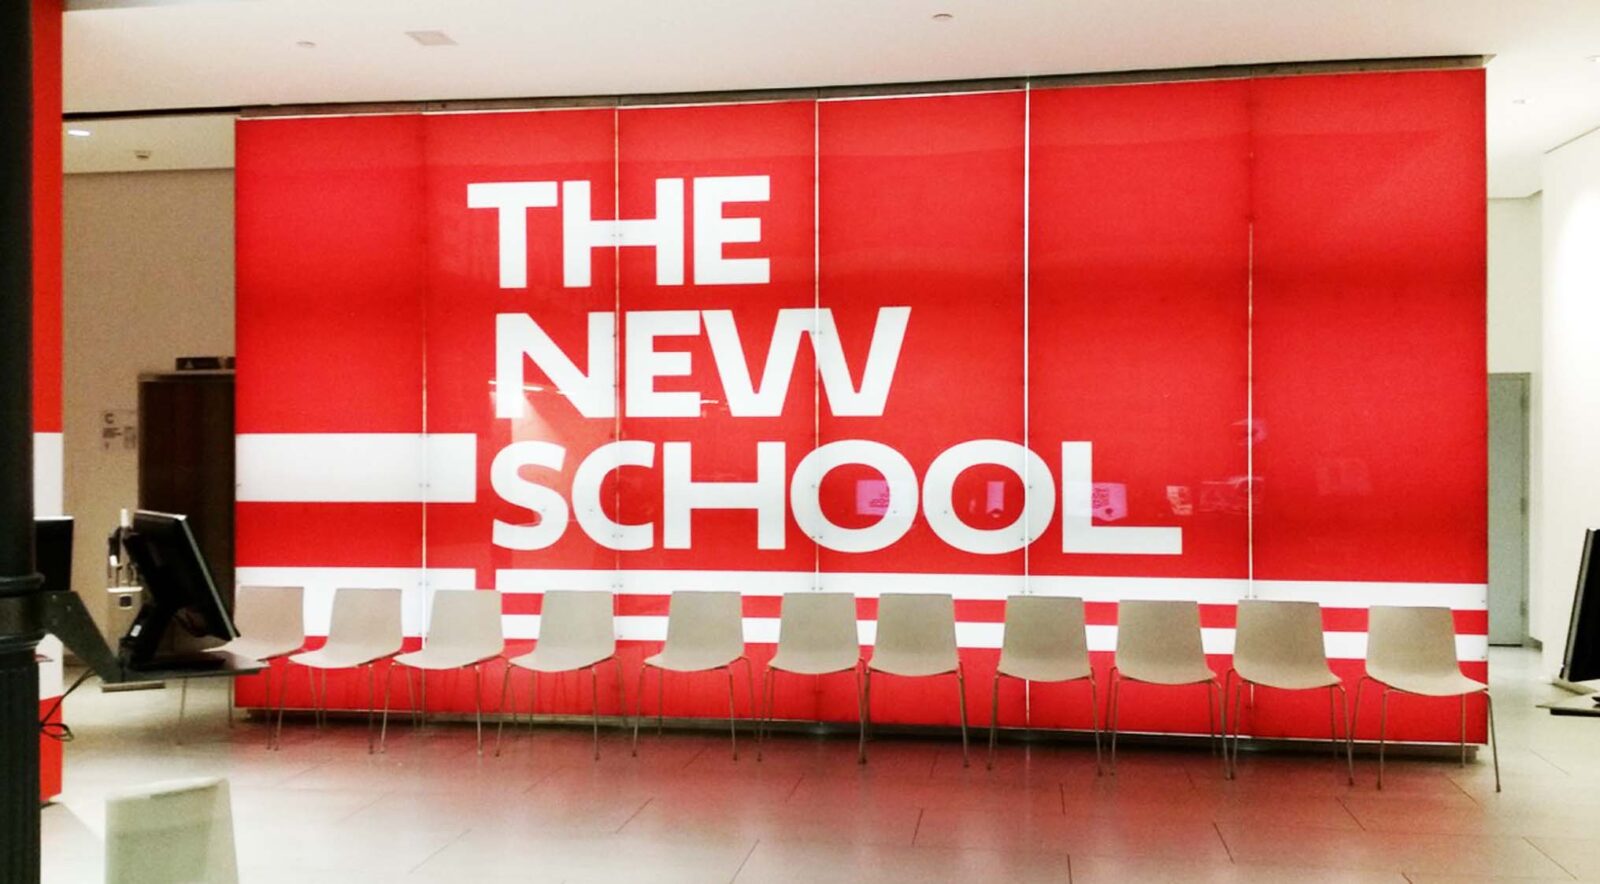 THE NEW SCHOOL